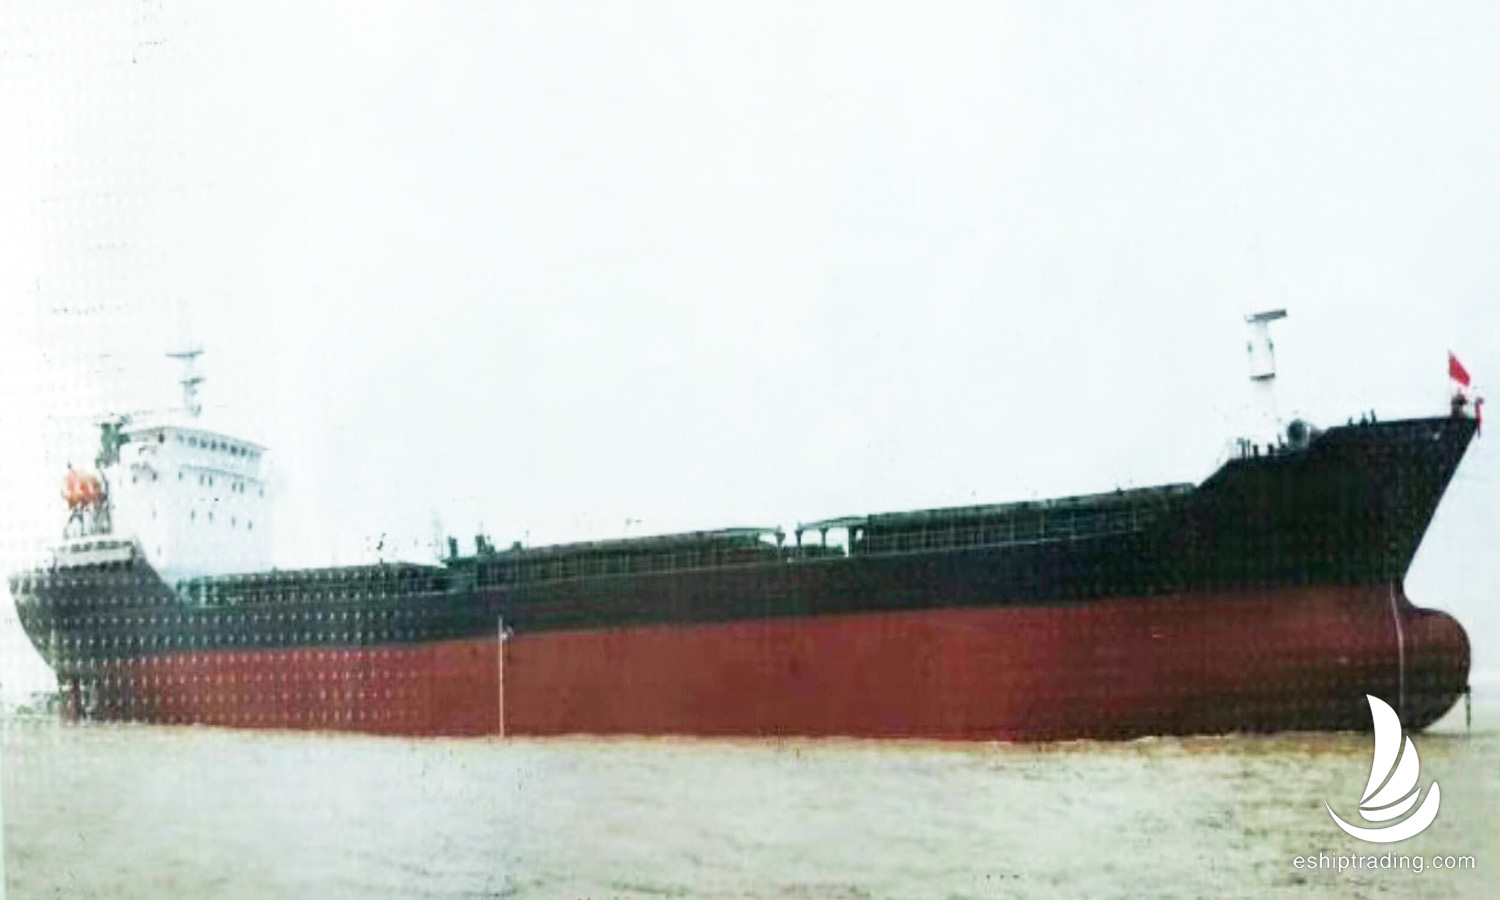 出售13300吨散货船